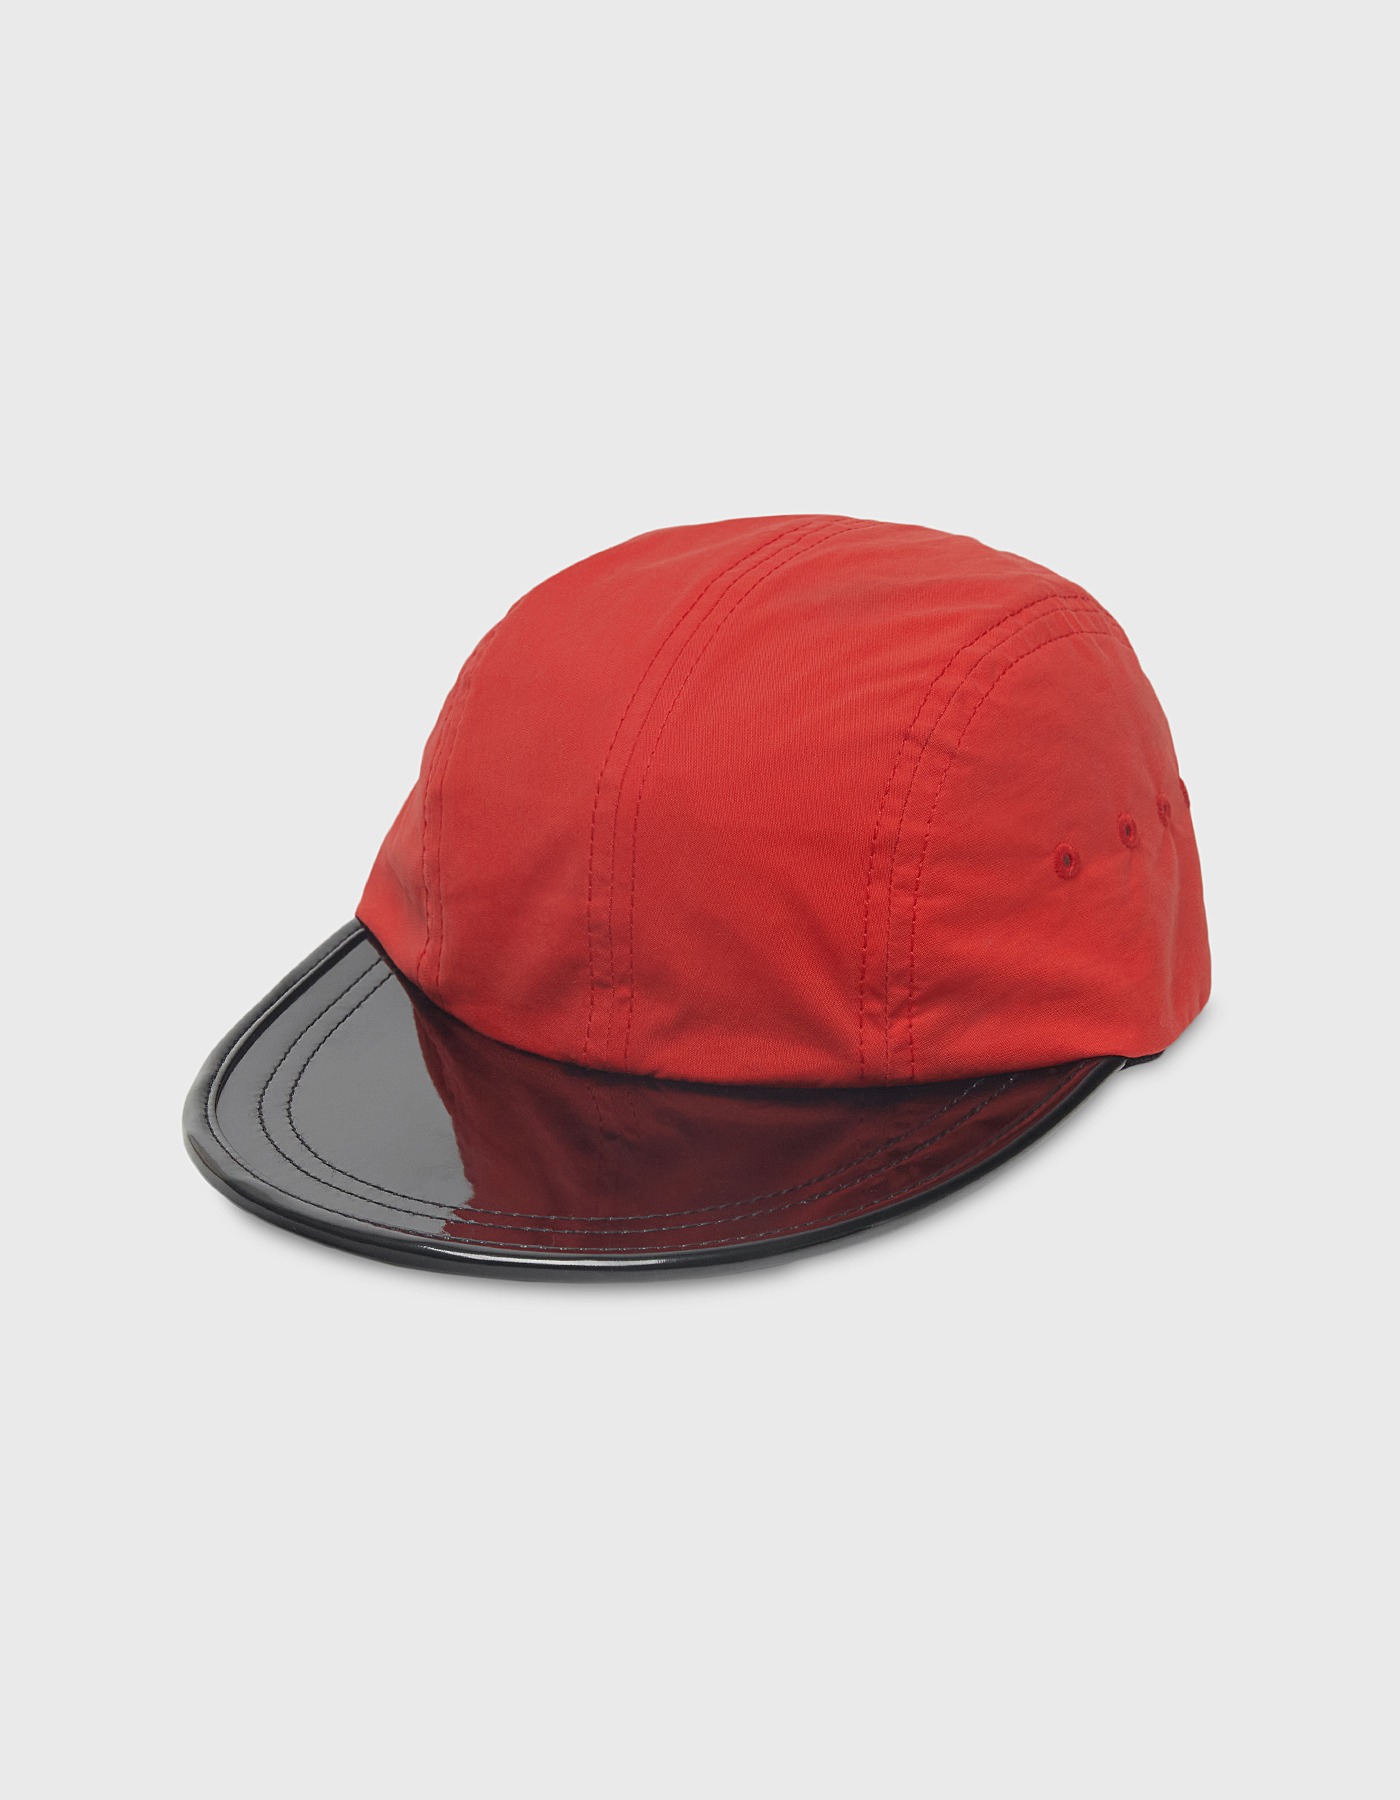 ENAMEL LONG BILL CAP / Red